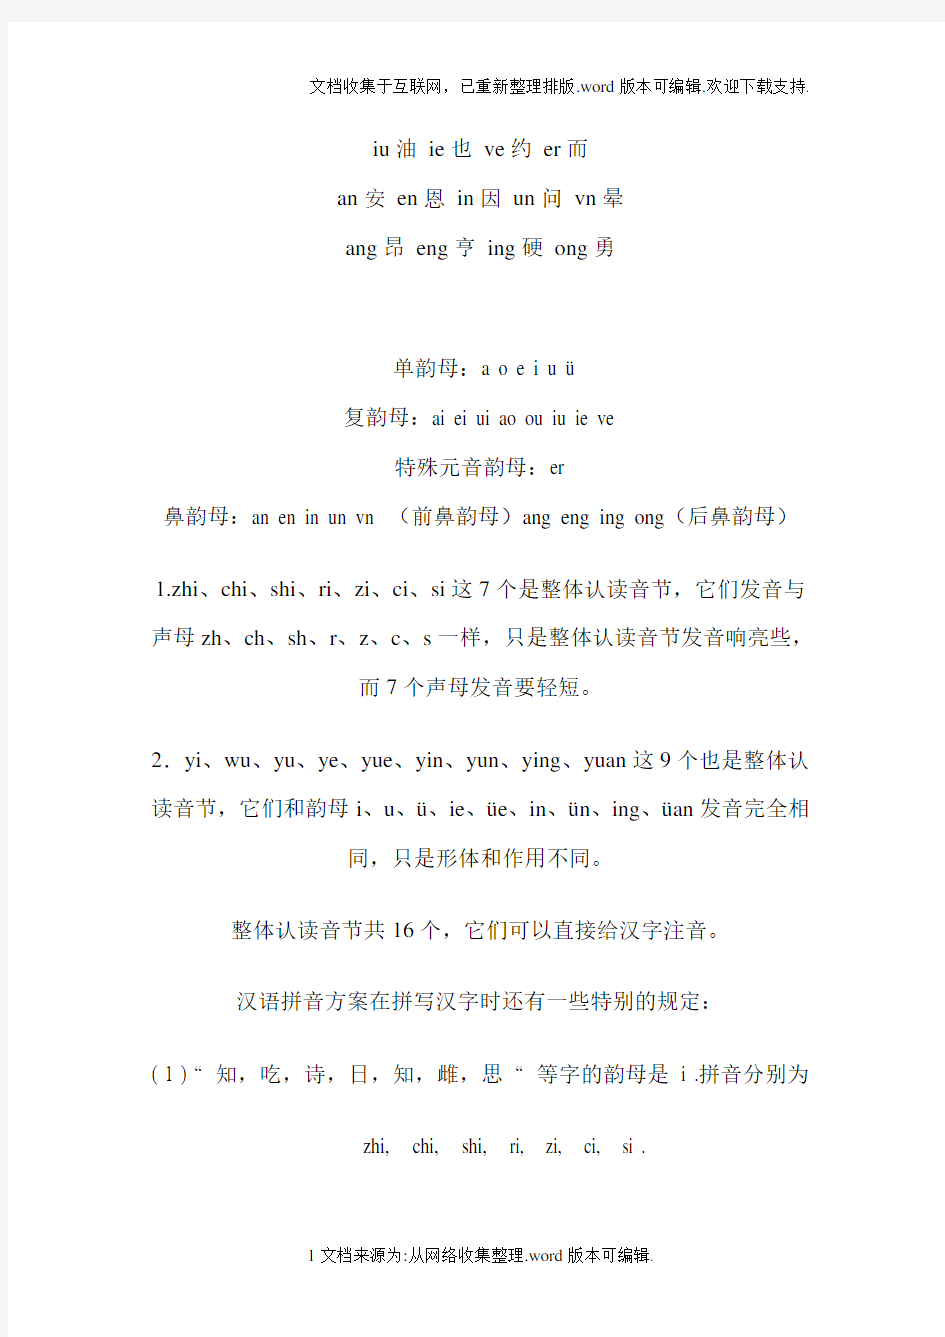 汉语拼音声母表-韵母表-整体认读音节表